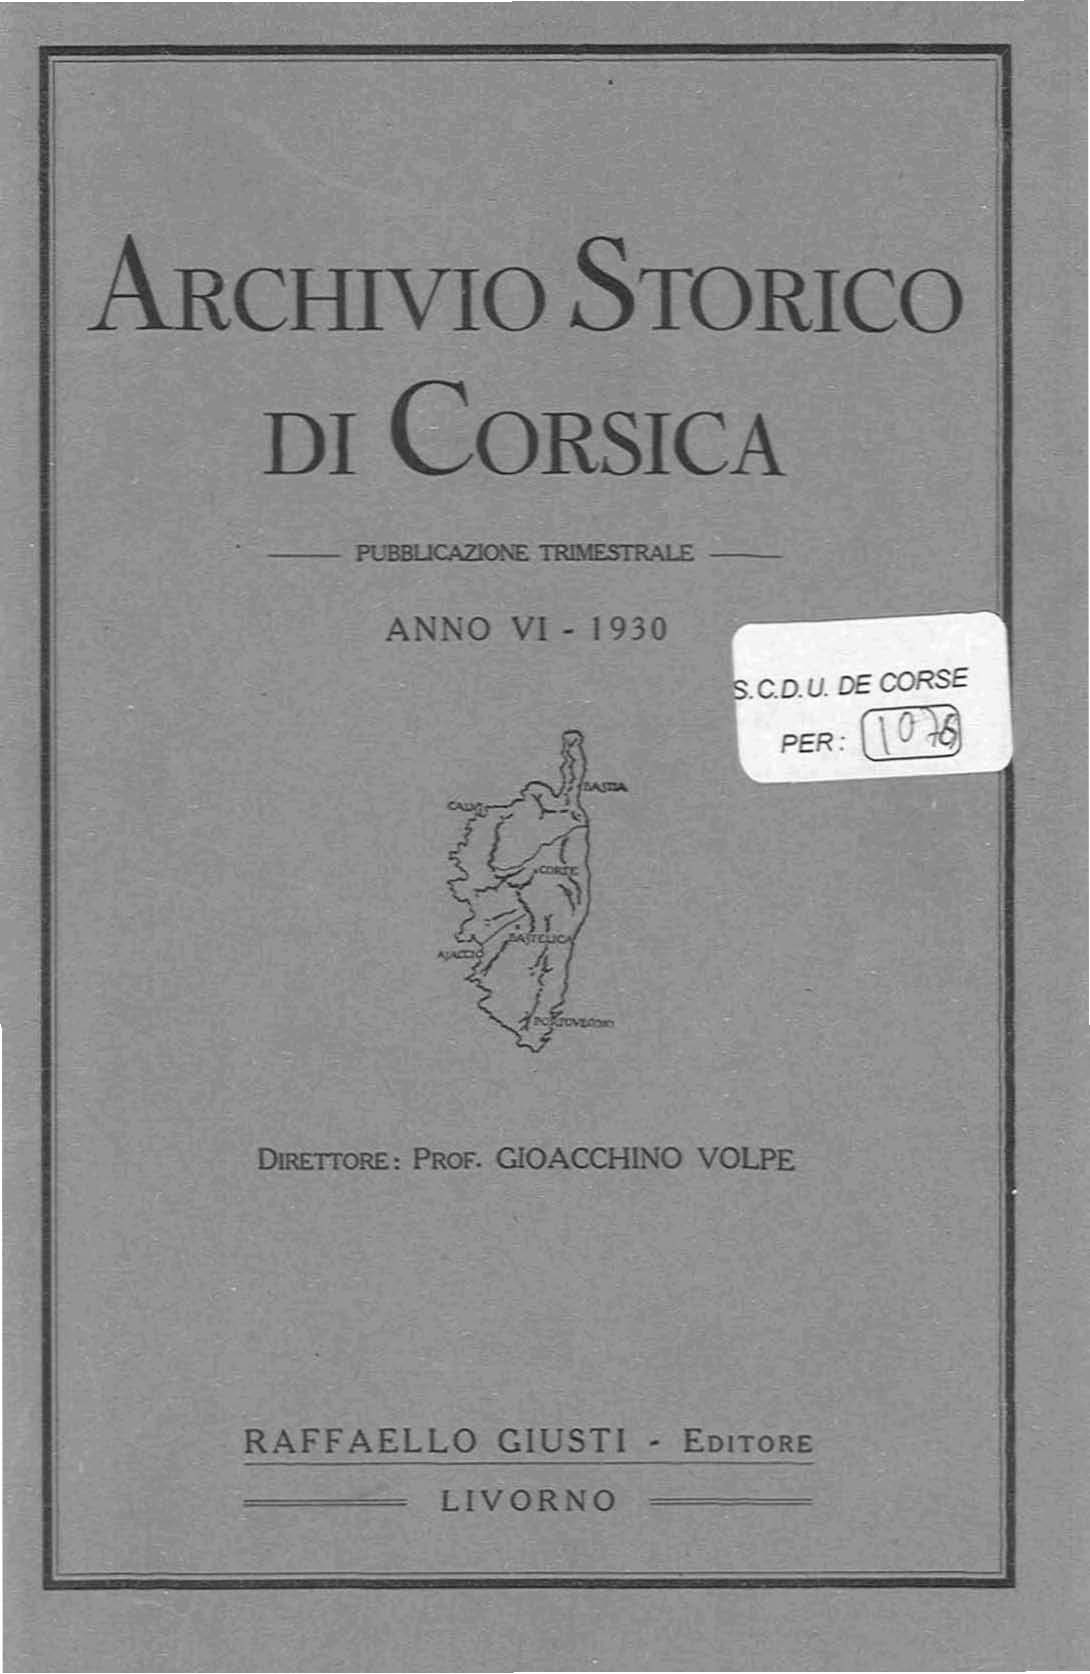 >Archivio Storico di Corsica (1930)